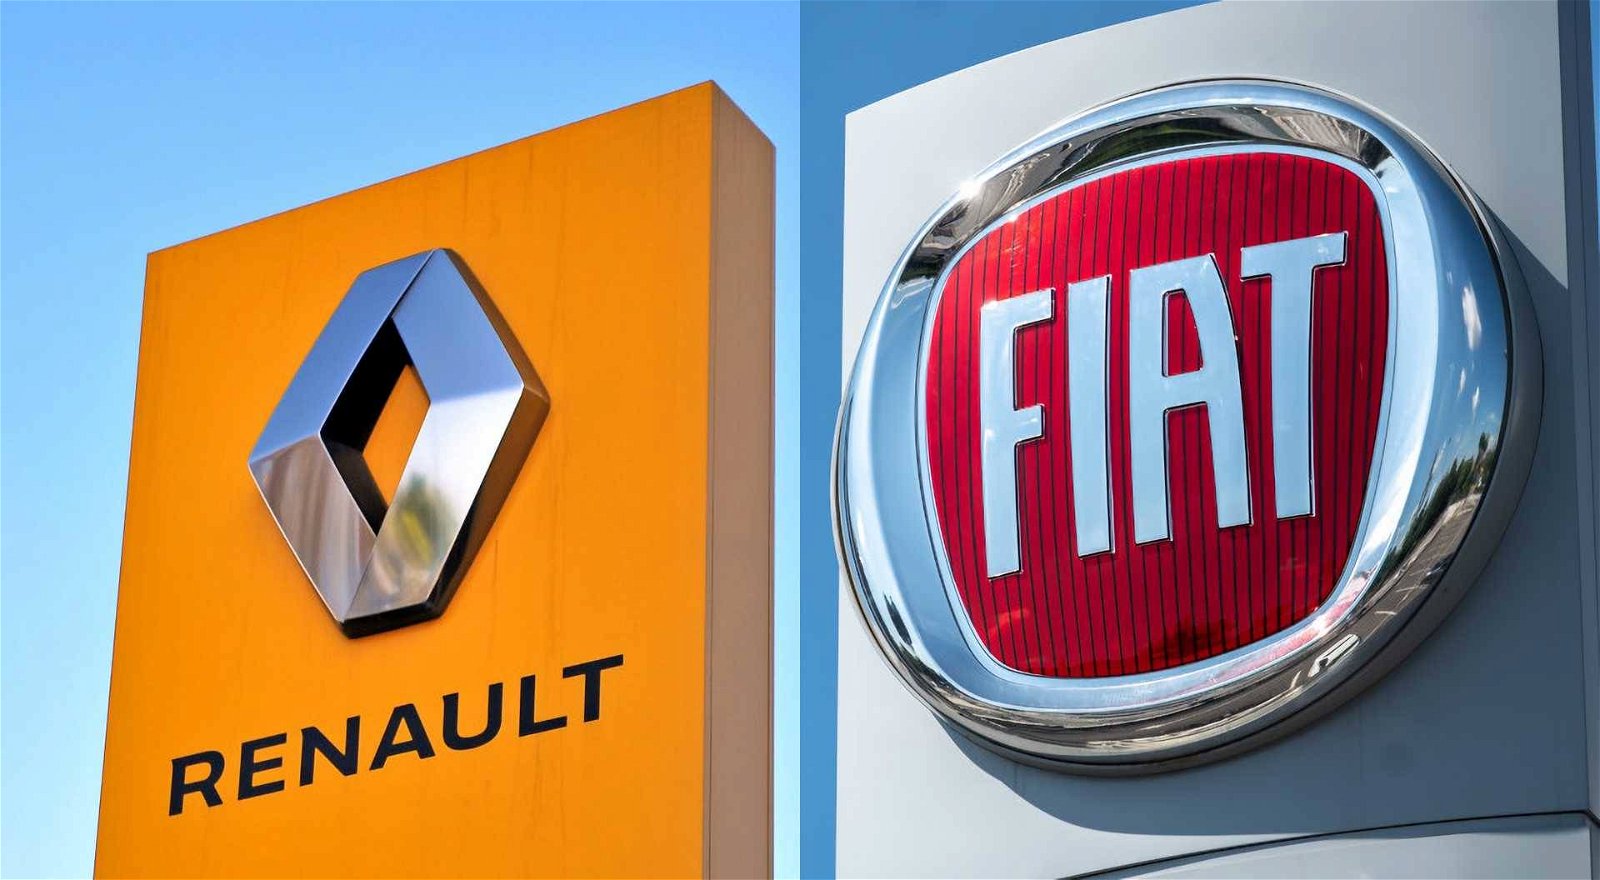 Immagine di Fusione FCA - Renault: l'automobilismo italiano piangerà?